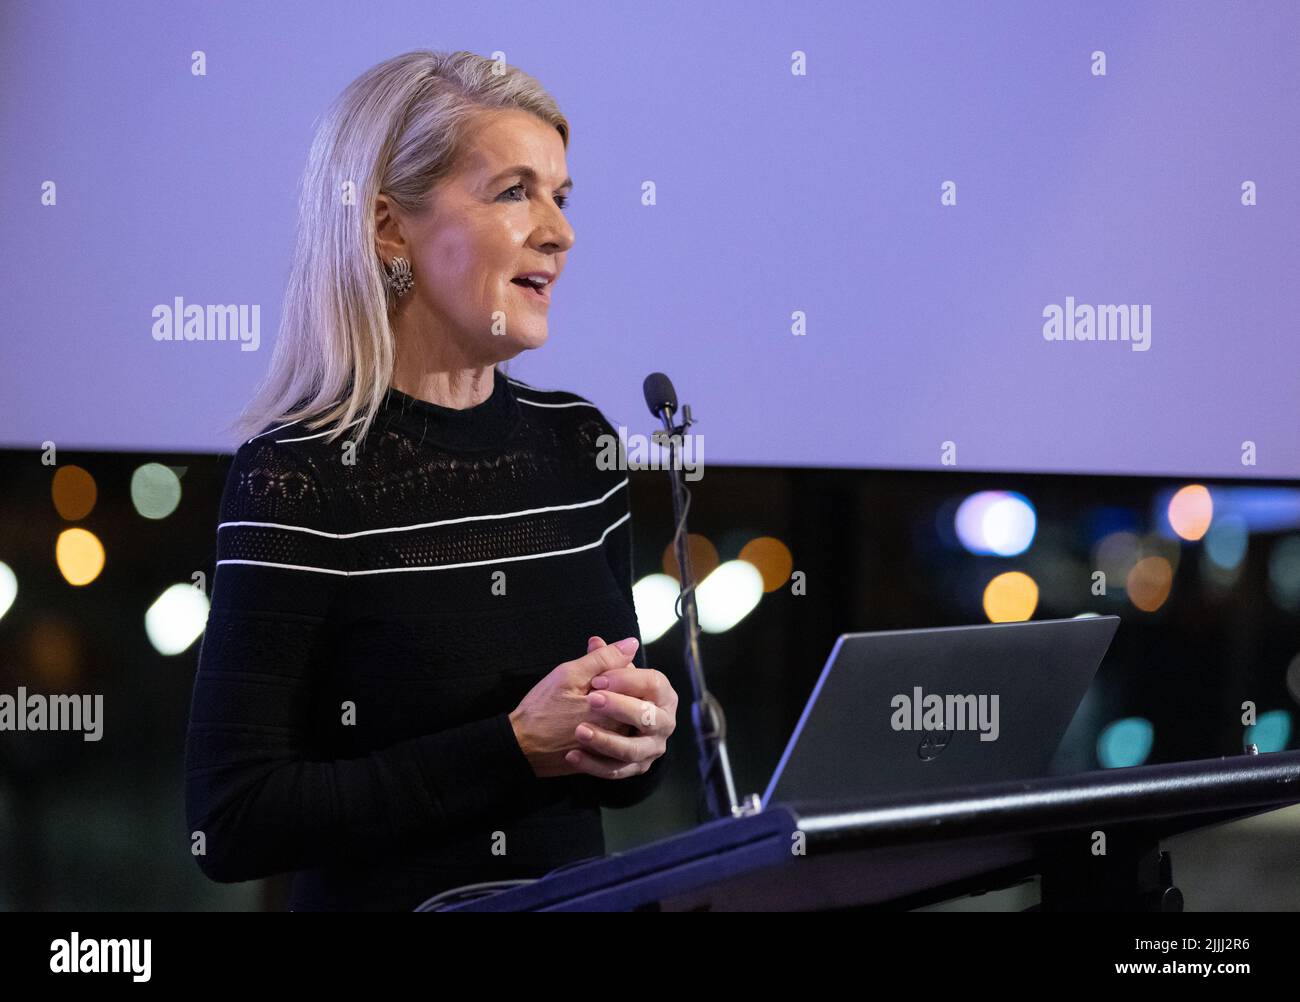 Ehemalige Politikerin Julie Bishop, die 2022 bei einer Veranstaltung in Melbourne sprach Stockfoto